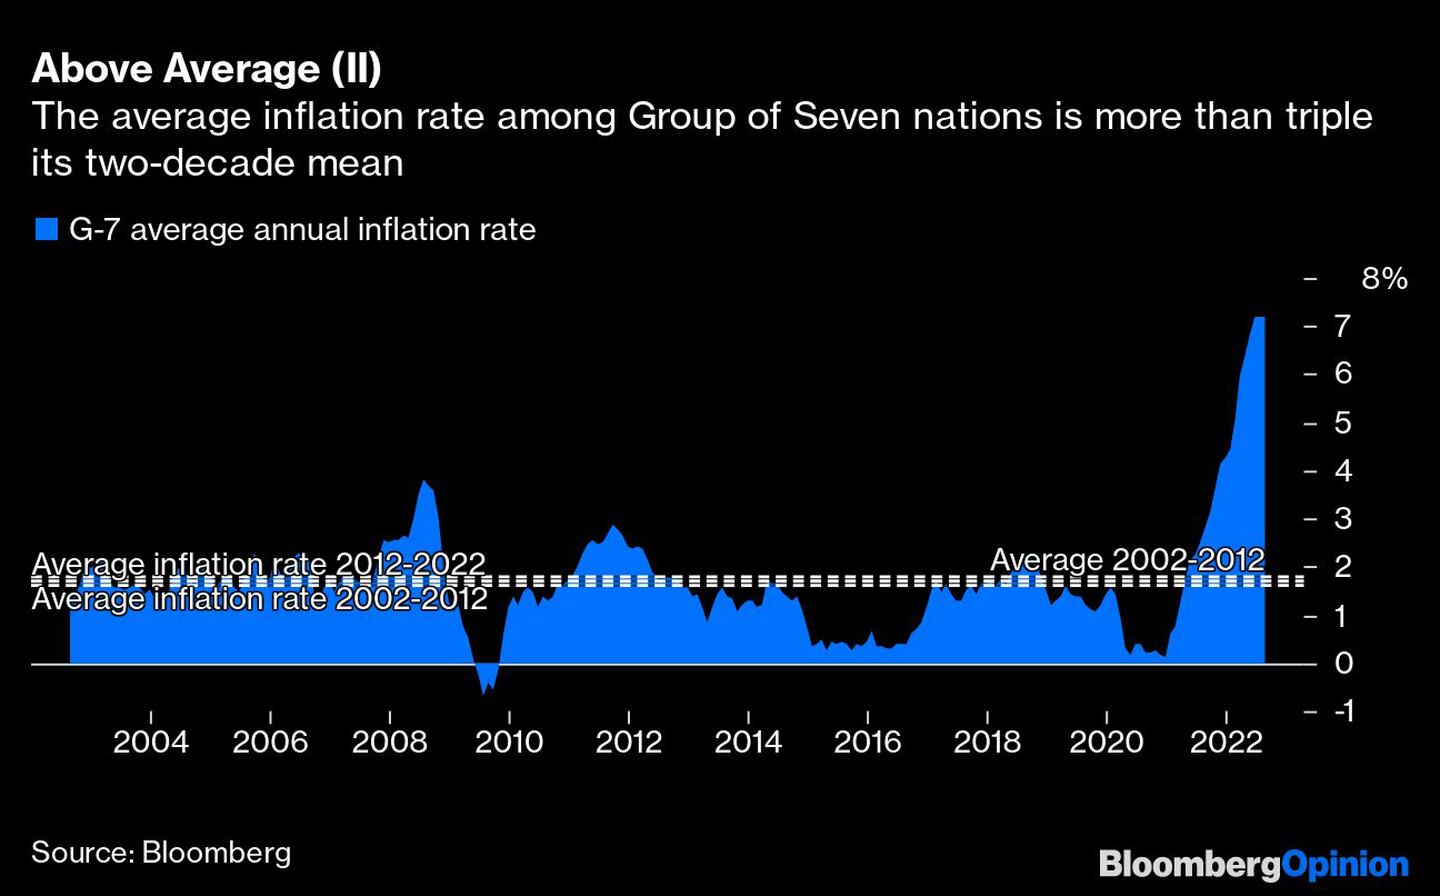 La tasa de inflación media de los países del Grupo de los Siete es más del triple de su media de dos décadasdfd